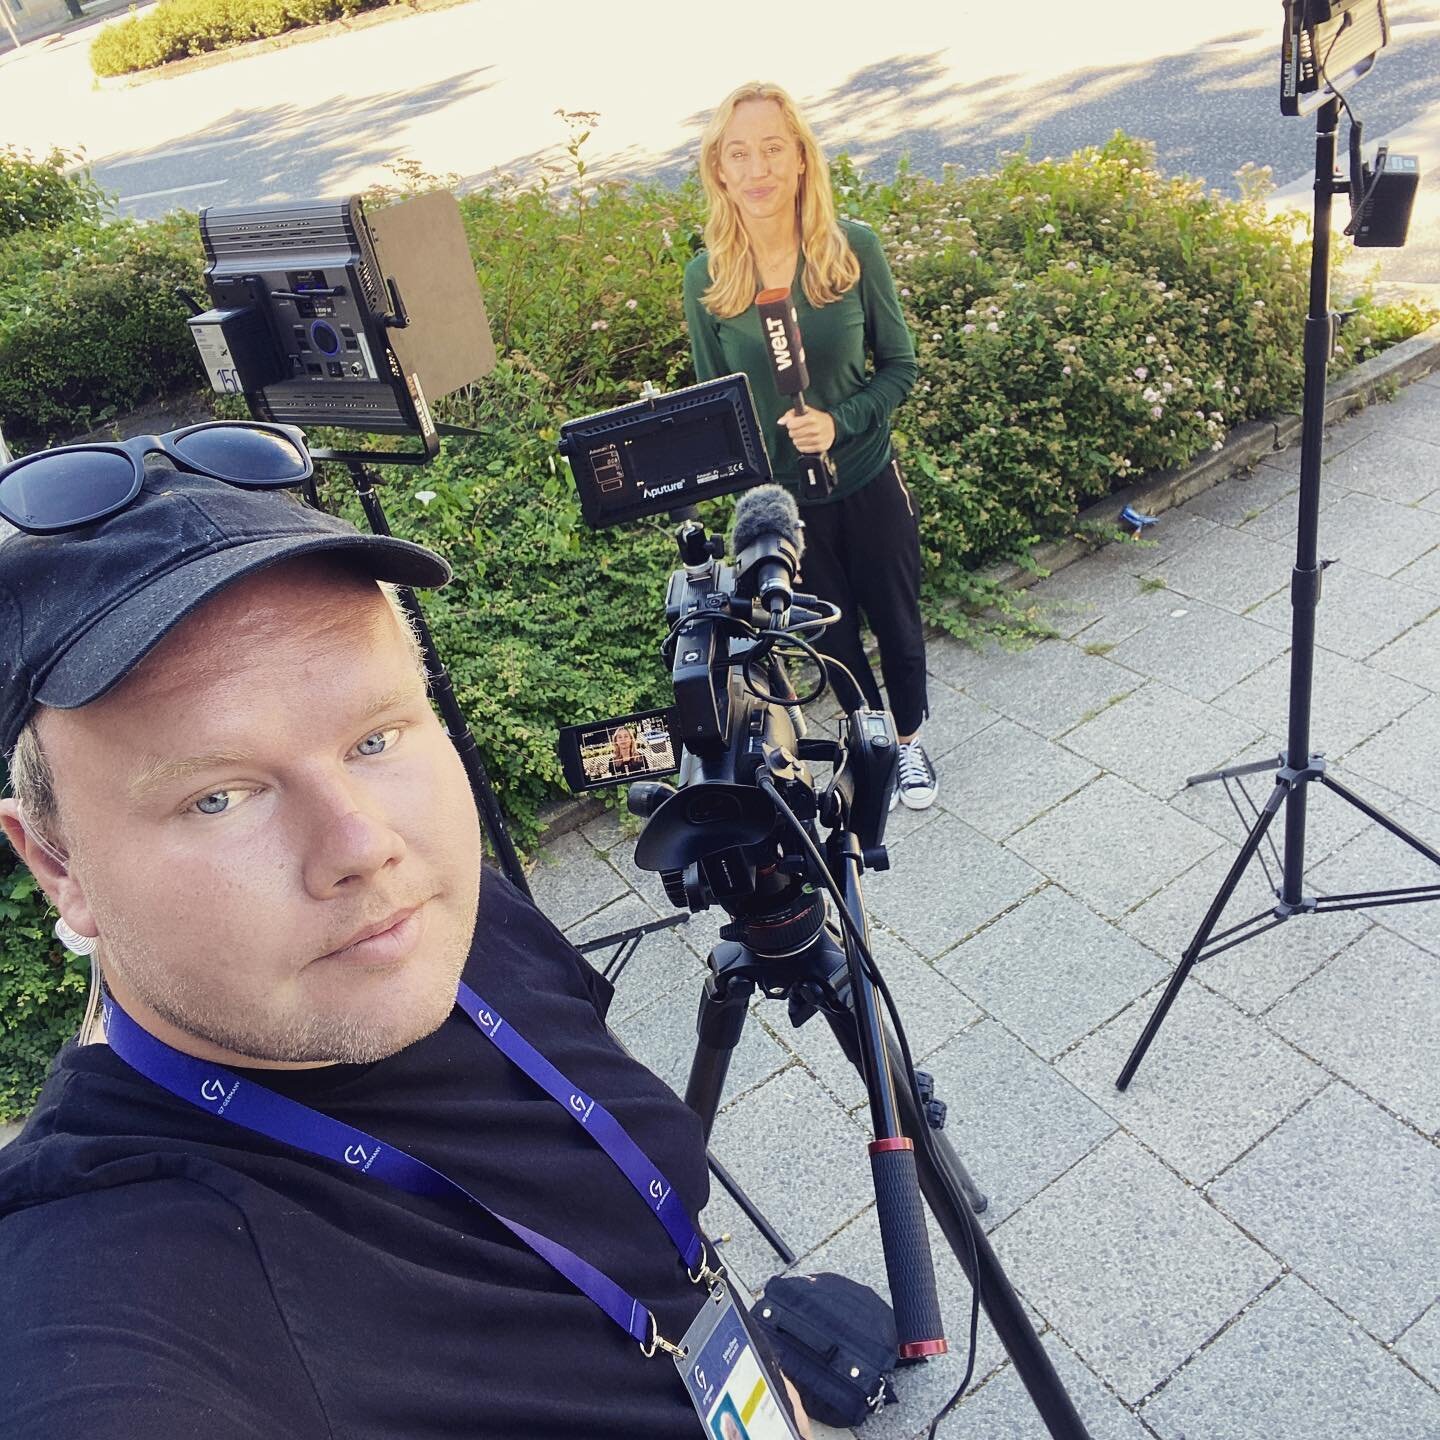 Tag 2 beim #G7 f&uuml;r @welt.nachrichtensender.
#bavaria #live #g7 #garmisch #demo #theresienwiese #liveu #onair #work #kameramann #reporter #news #sony #liveu #tv #welt #weltfernsehen #lovemyjob @sony @sonyprofilmmaking @picture5_tvproduktion @live